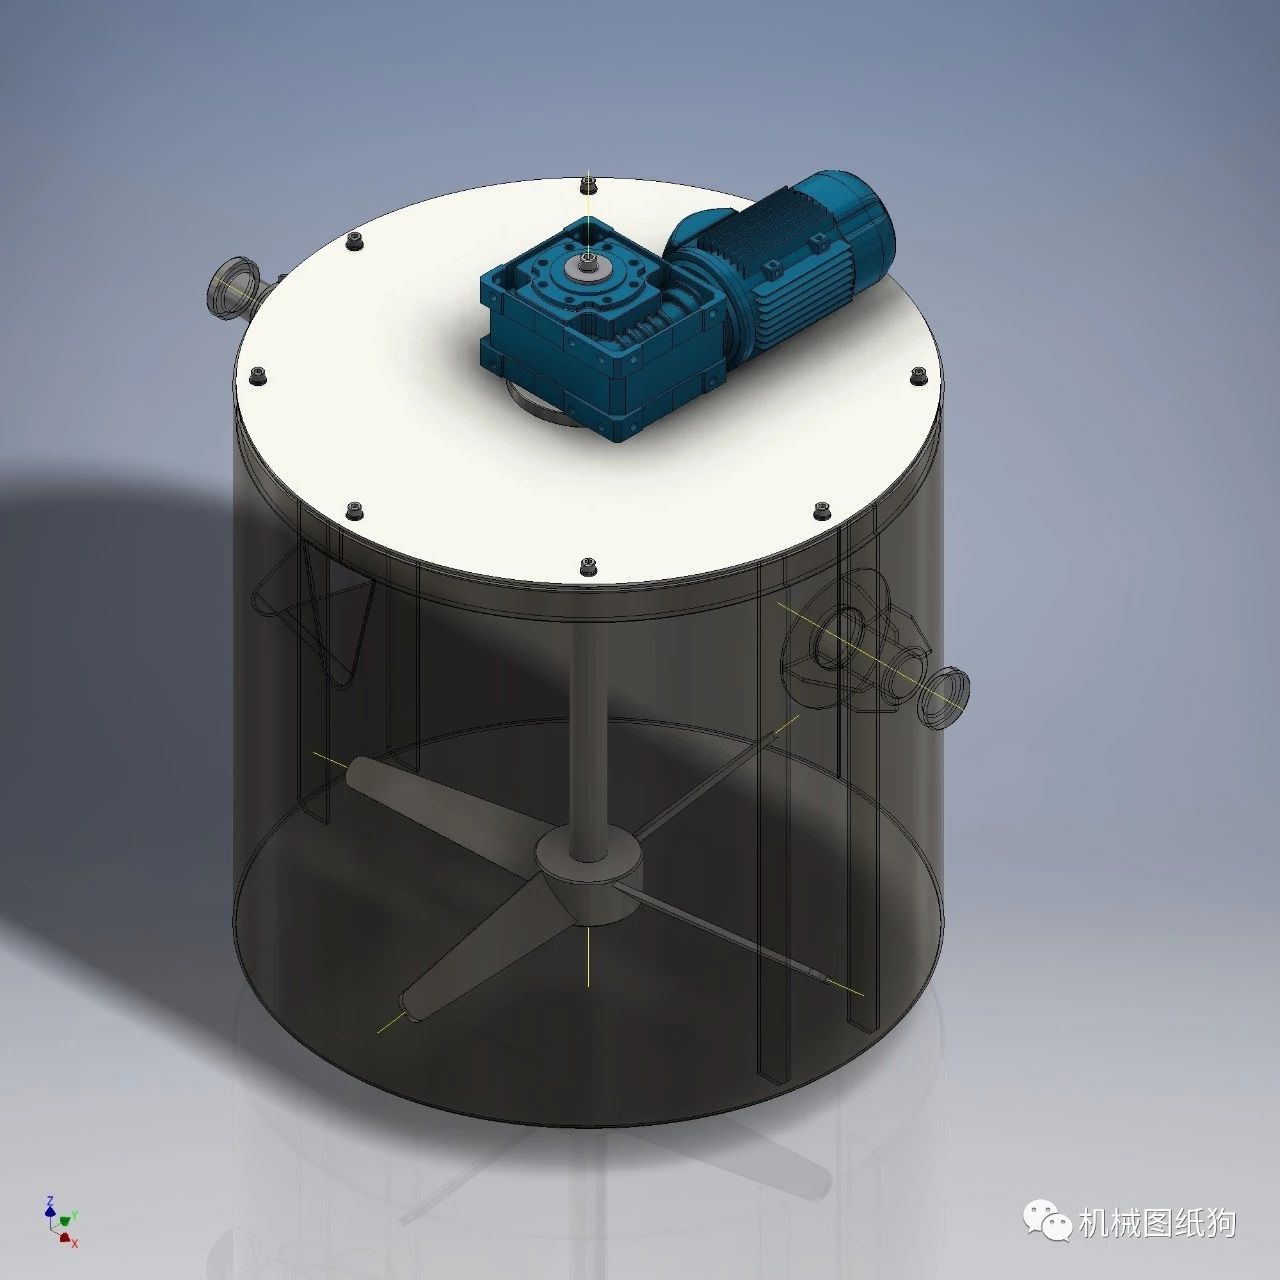 【工程机械】简易立式搅拌桶模型3D图纸 STP格式